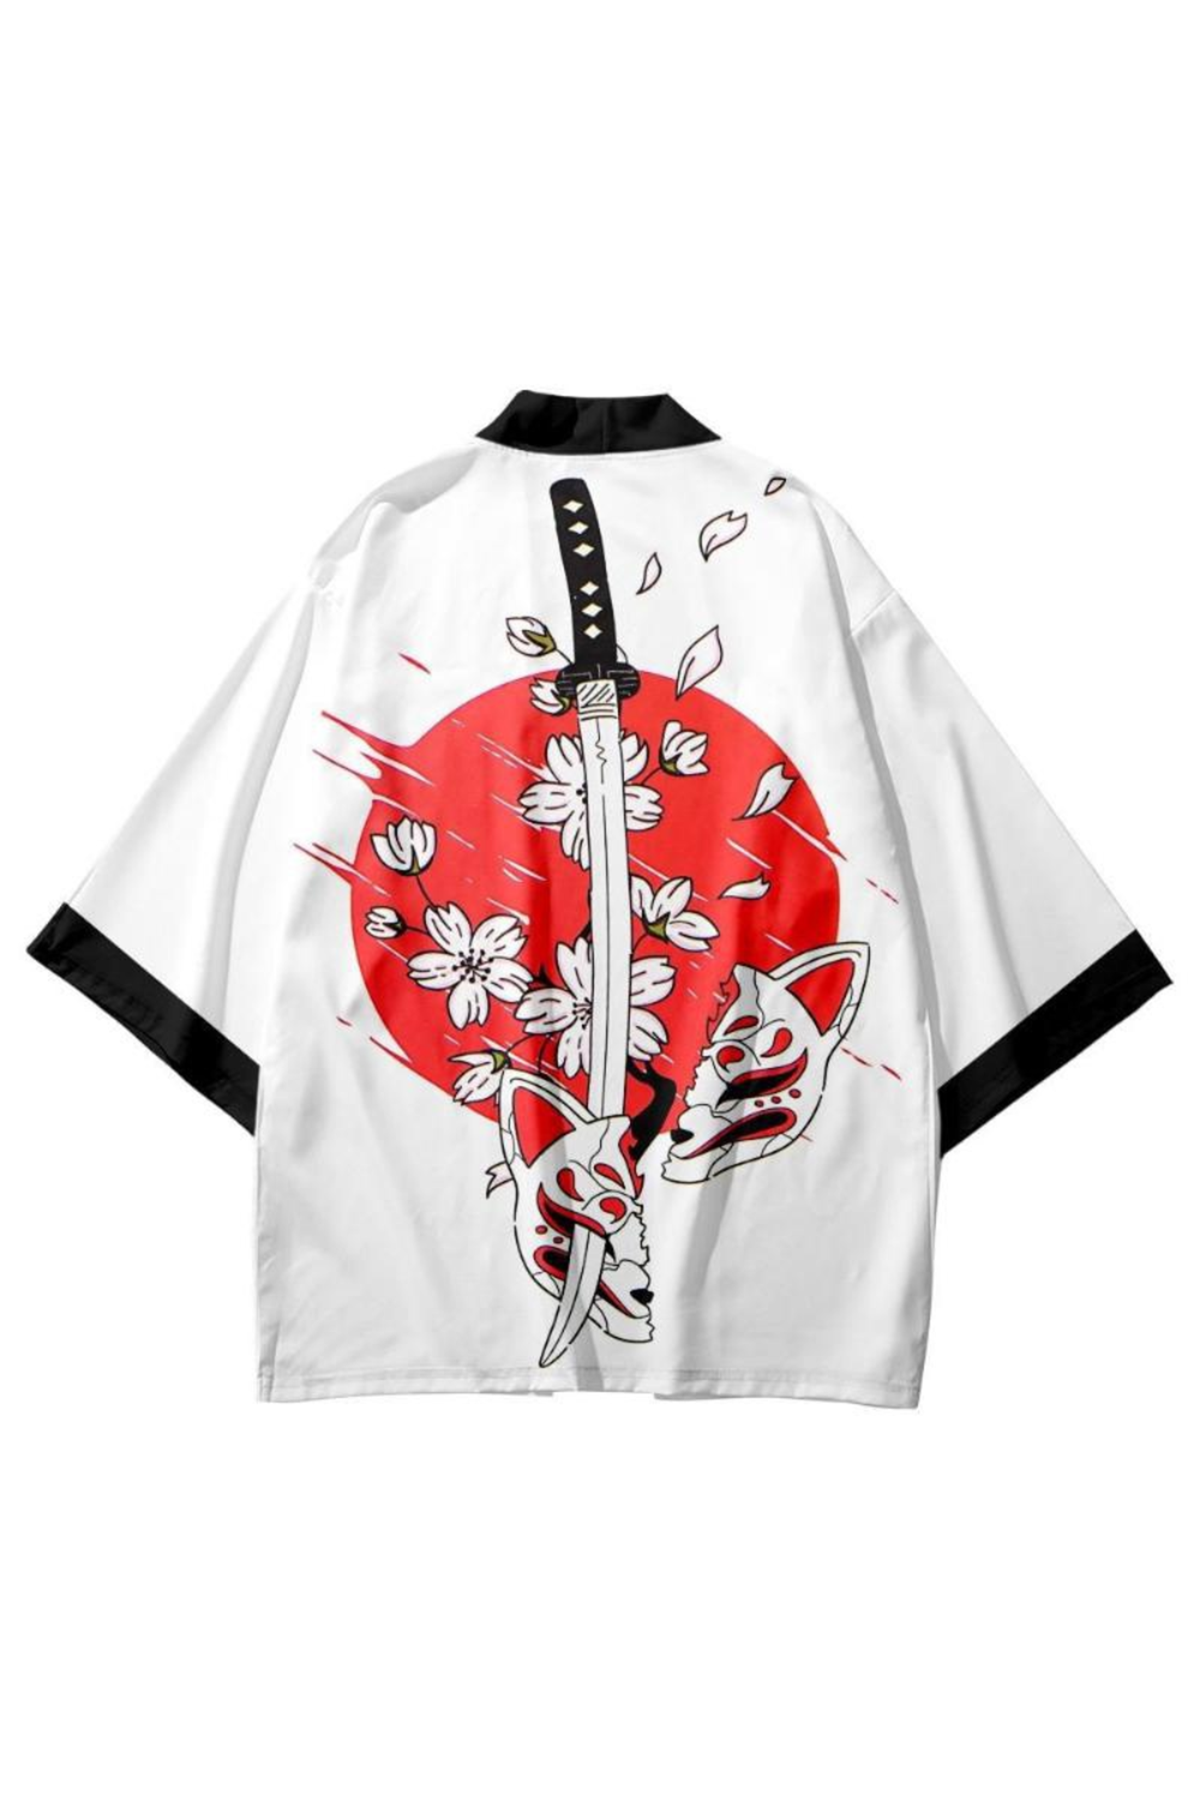 Japon Kadın/Erkek/Unisex/Oversize Siyah/Bej/Kırmızı Kimono-Siyah 1006